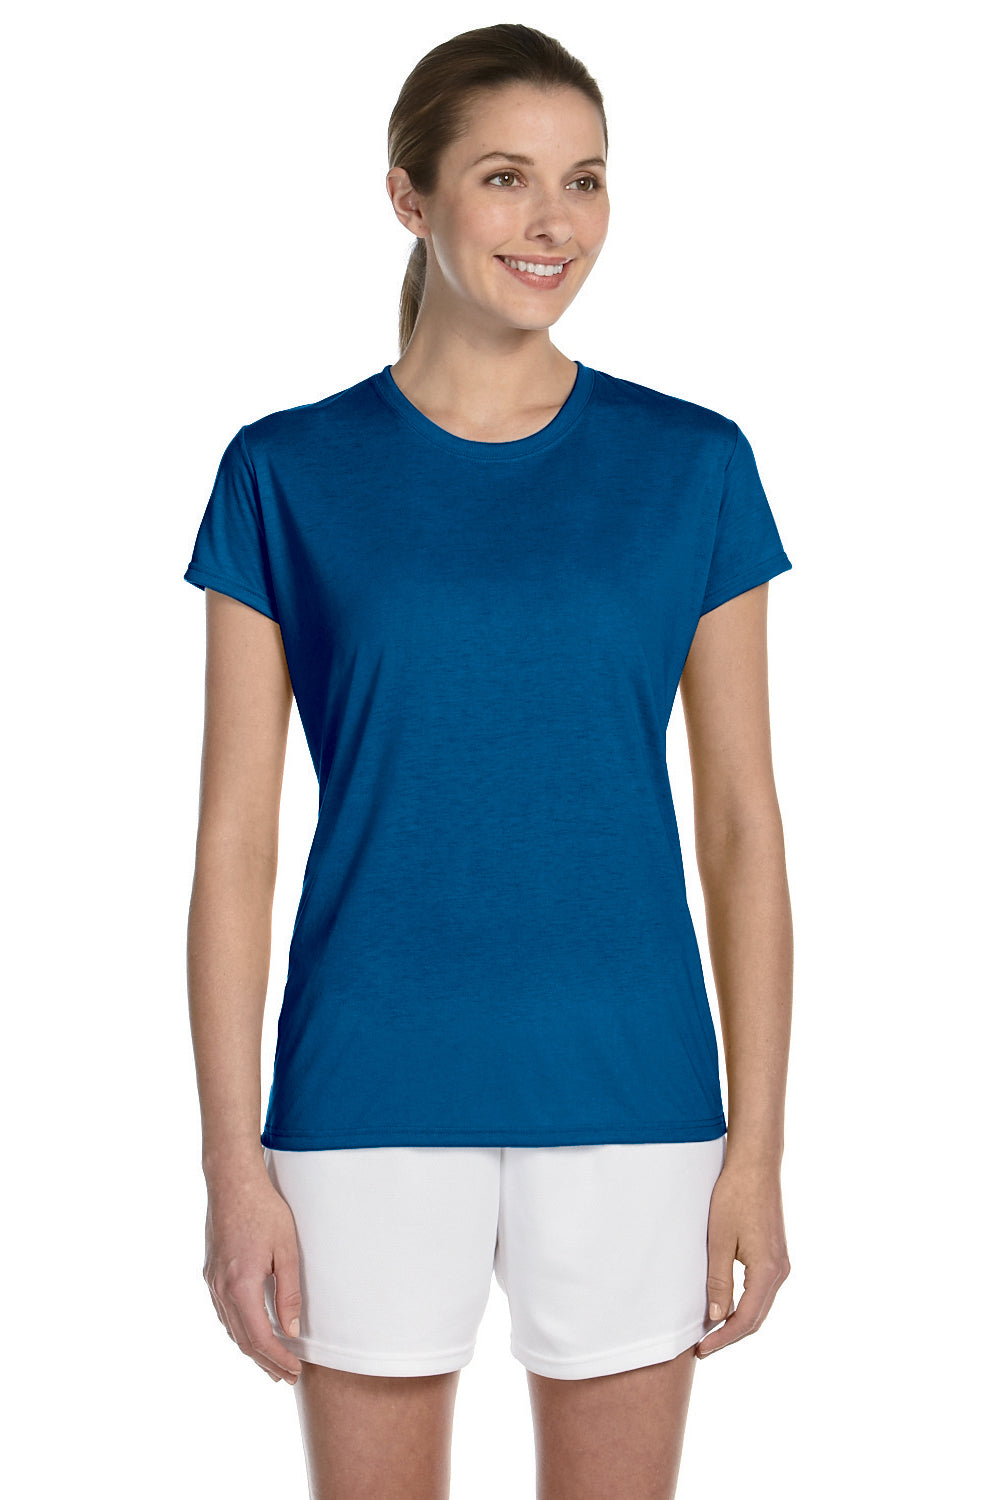 Gildan G420L Womens Performance Jersey Moisture Wicking Short Sleeve Crewneck T-Shirt Royal Blue Front